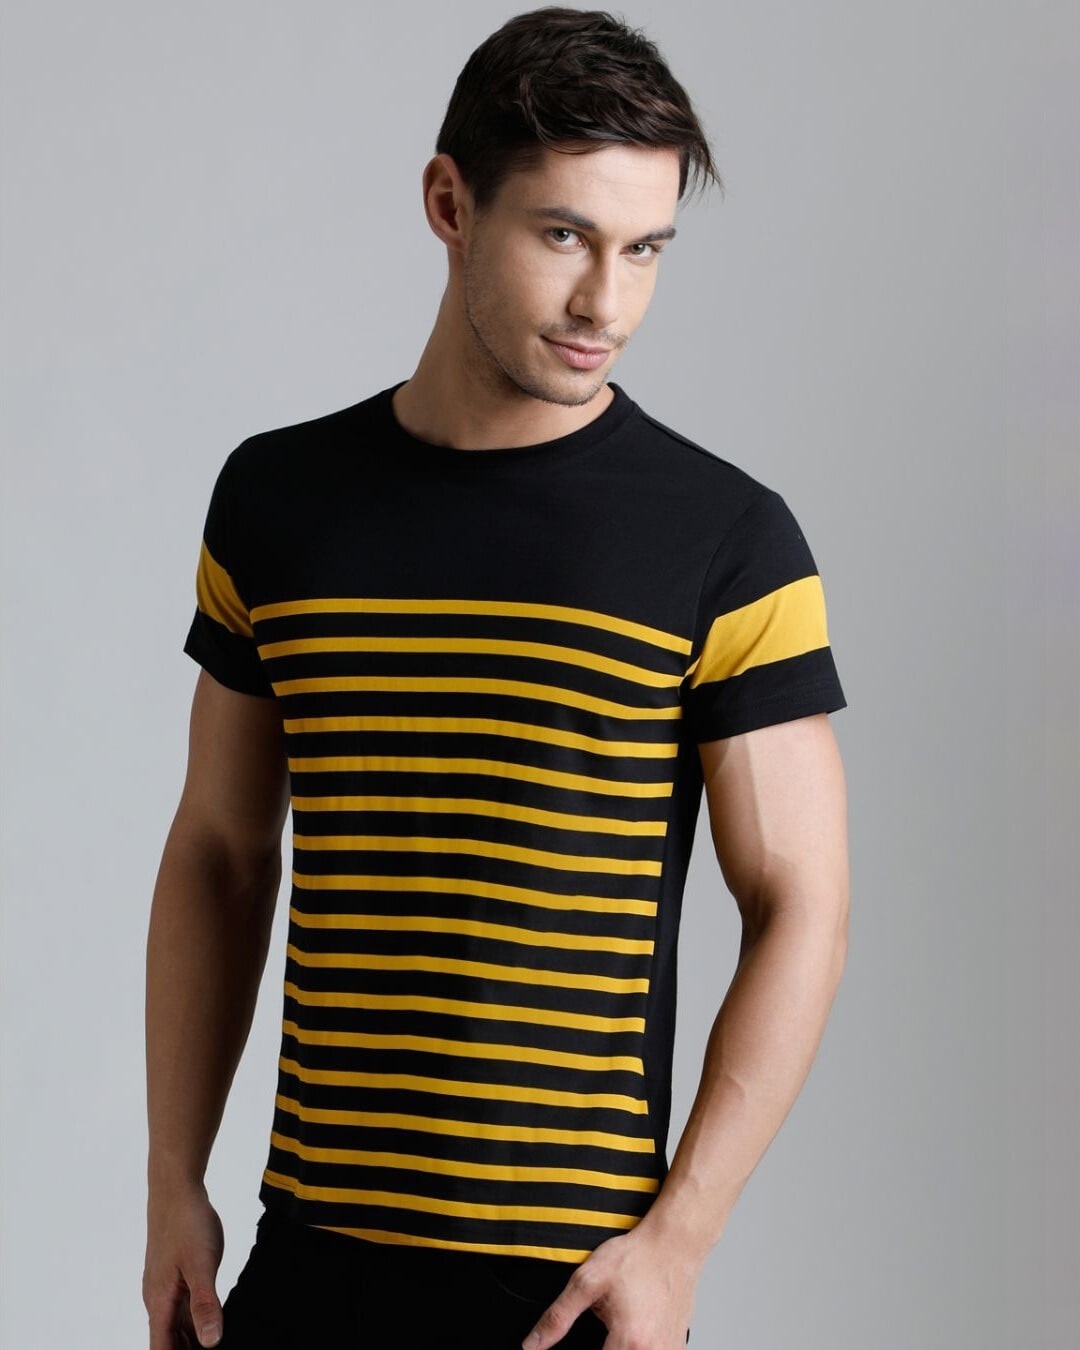 Shop Men's Black & Yellow Striped T-shirt